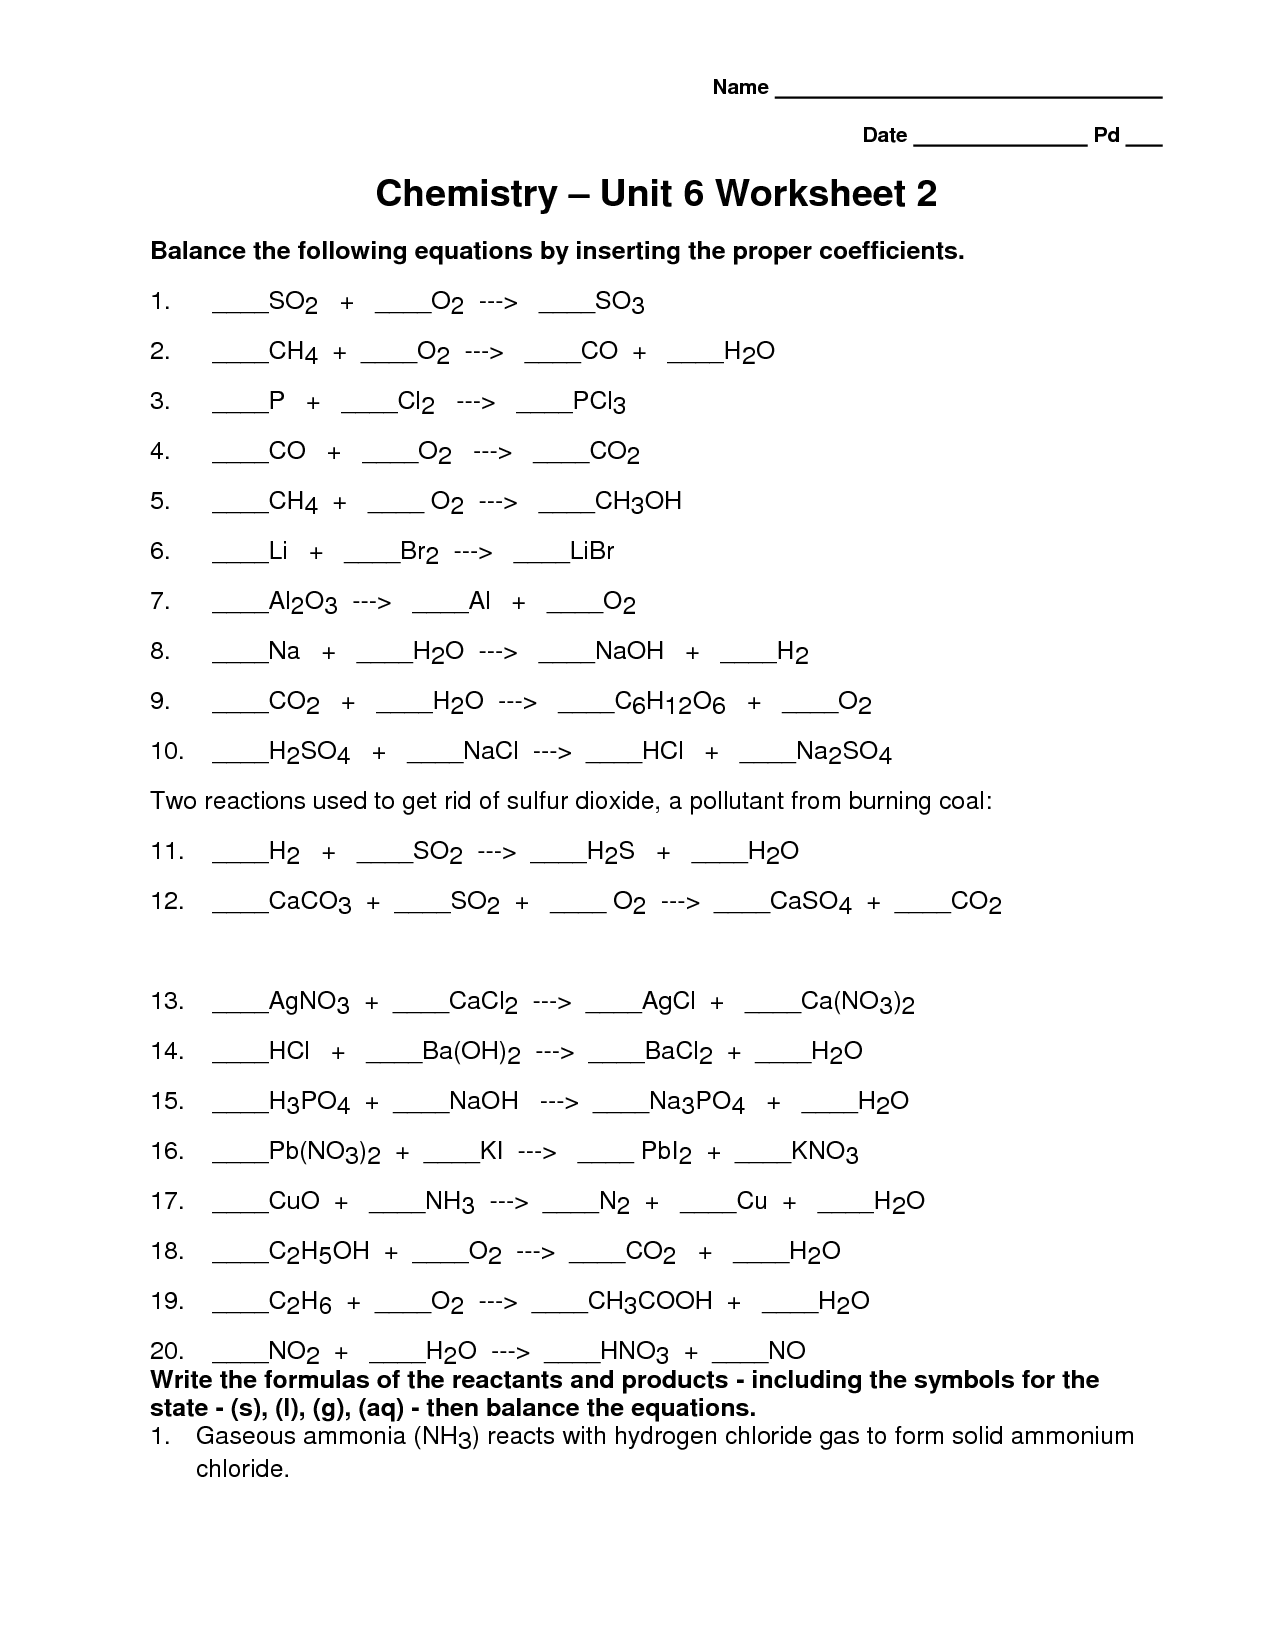 Chemistry Unit 1 Worksheet 6 Answers Image